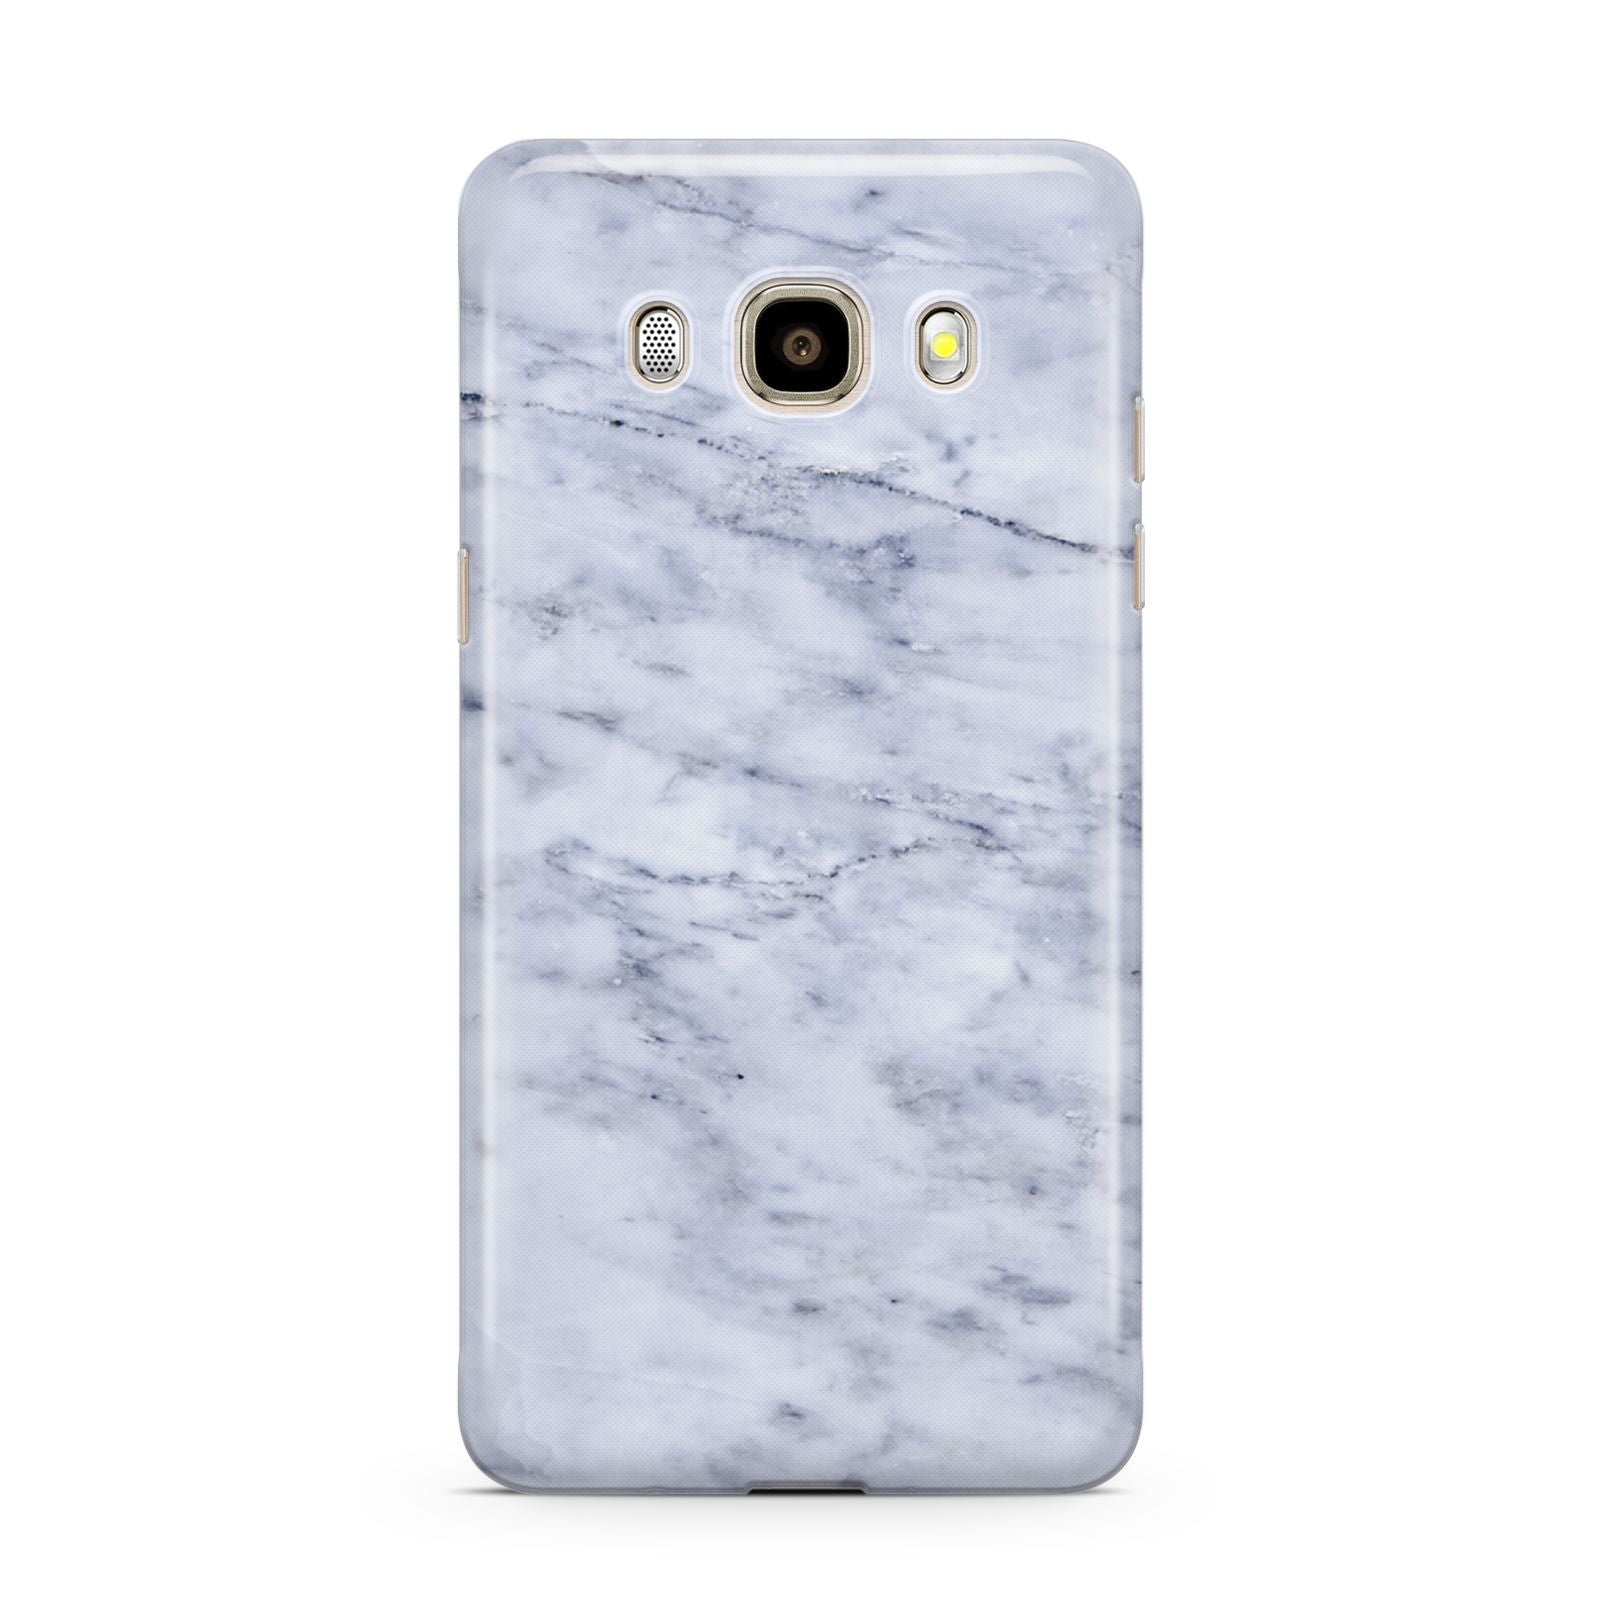 Faux Carrara Marble Print Samsung Galaxy J7 2016 Case on gold phone